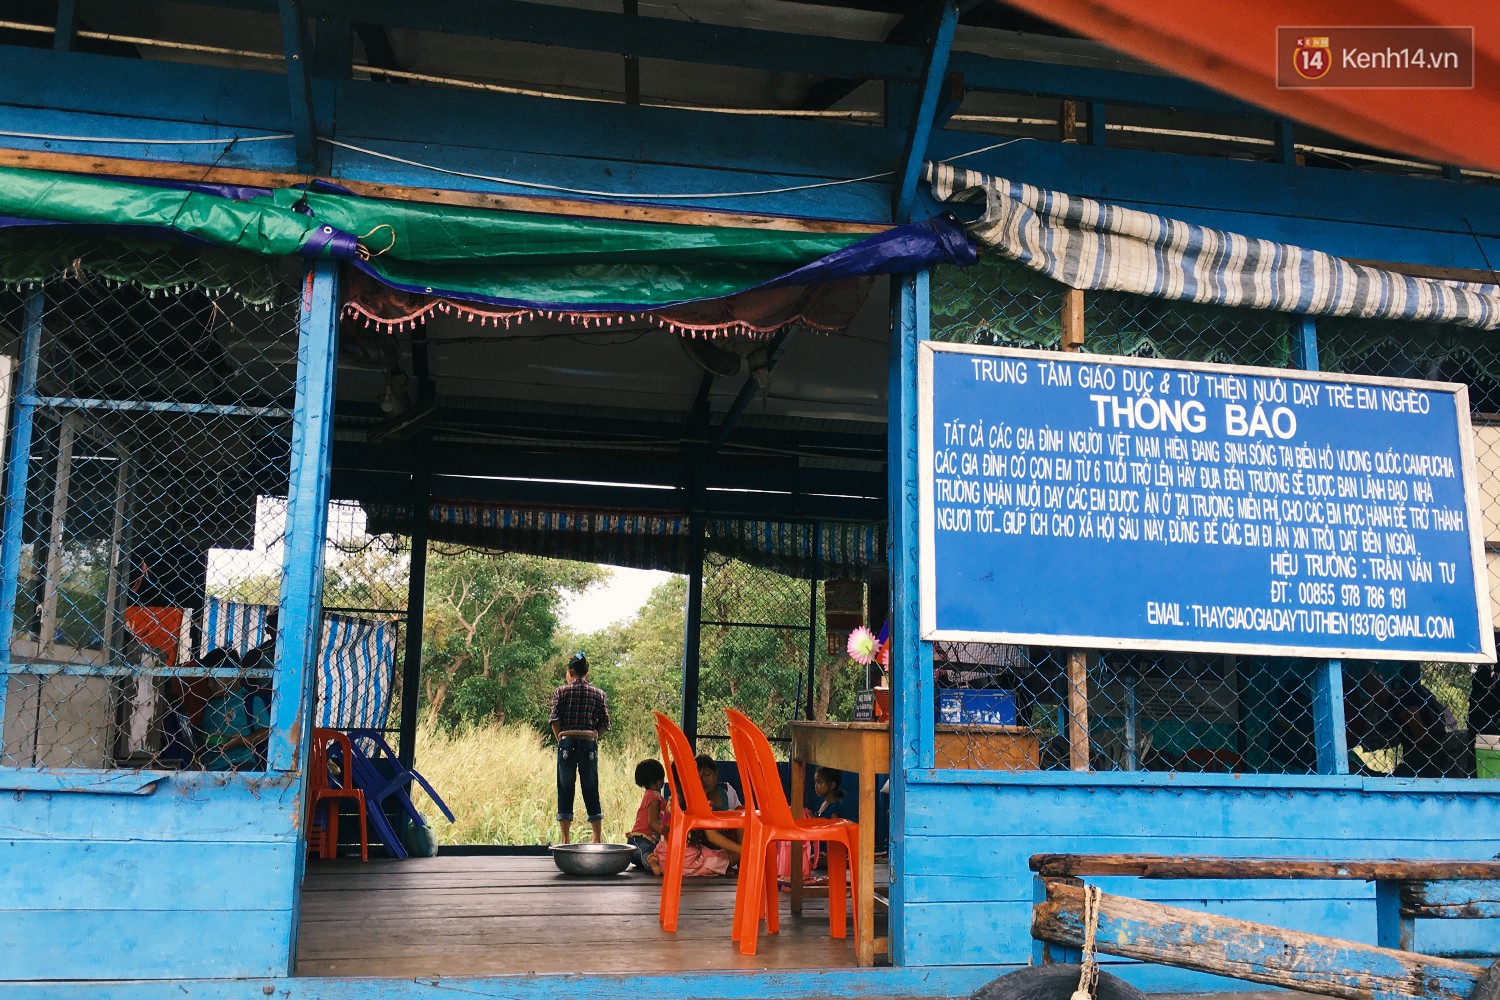 Chùm ảnh: Lớp học của những đứa trẻ Việt kiều không quốc tịch ở Biển Hồ Campuchia - Ảnh 2.